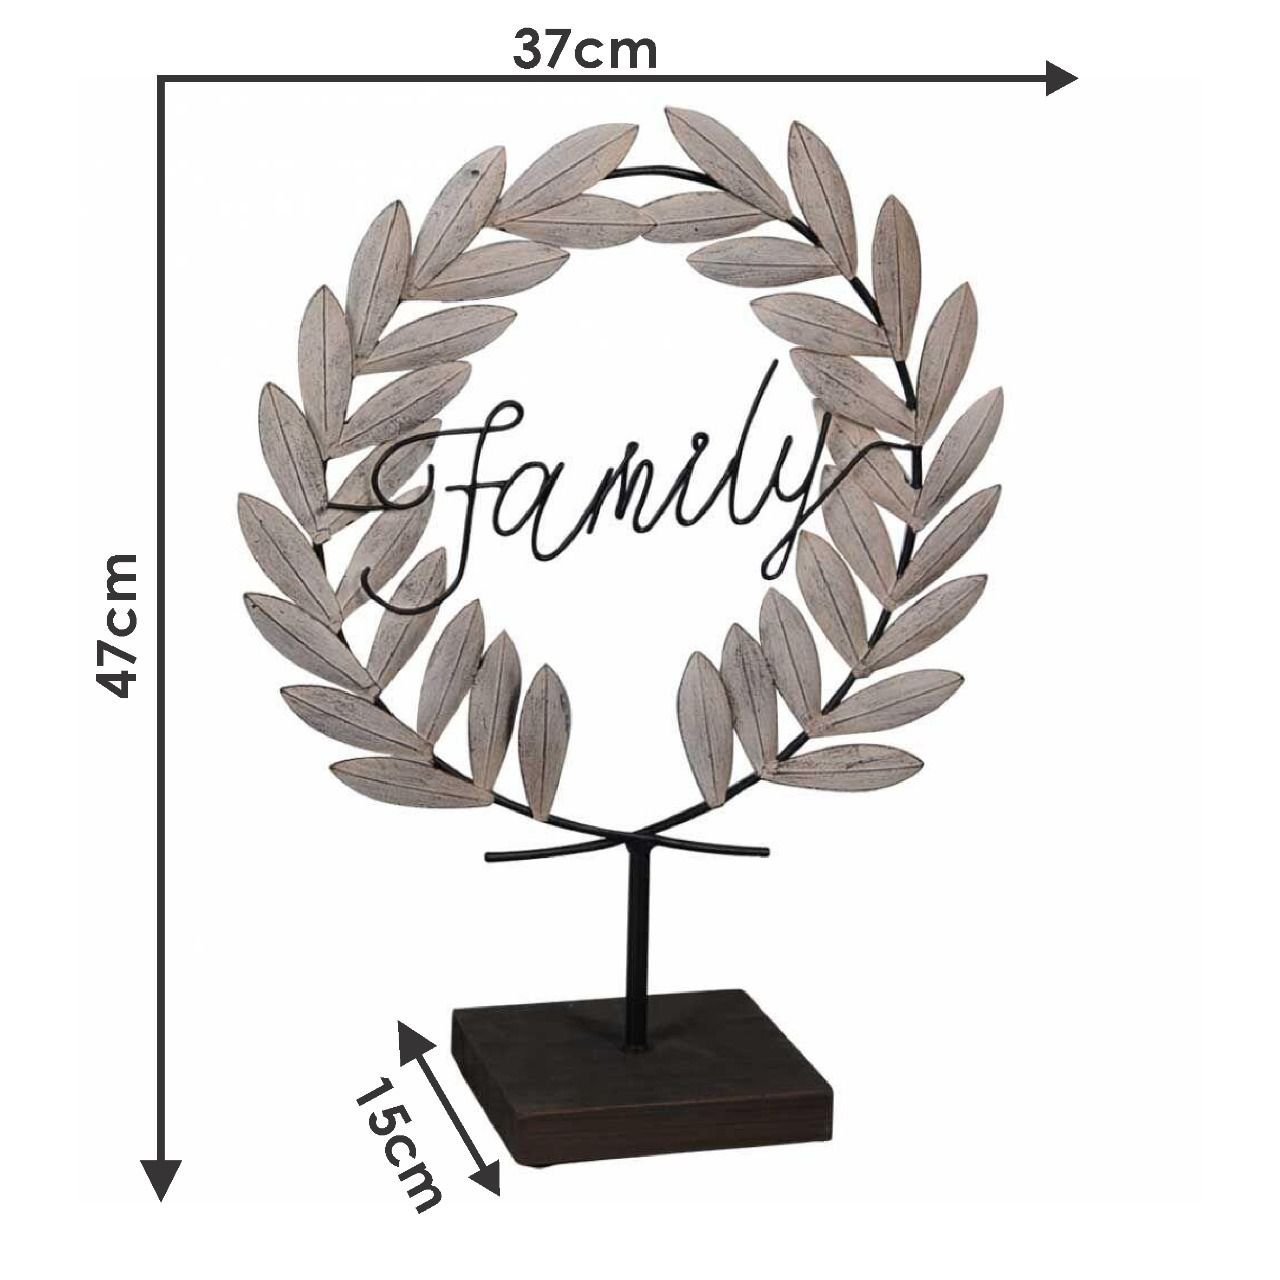 Placa Decorativa em Metal Family (Família) 47x37cm - 3